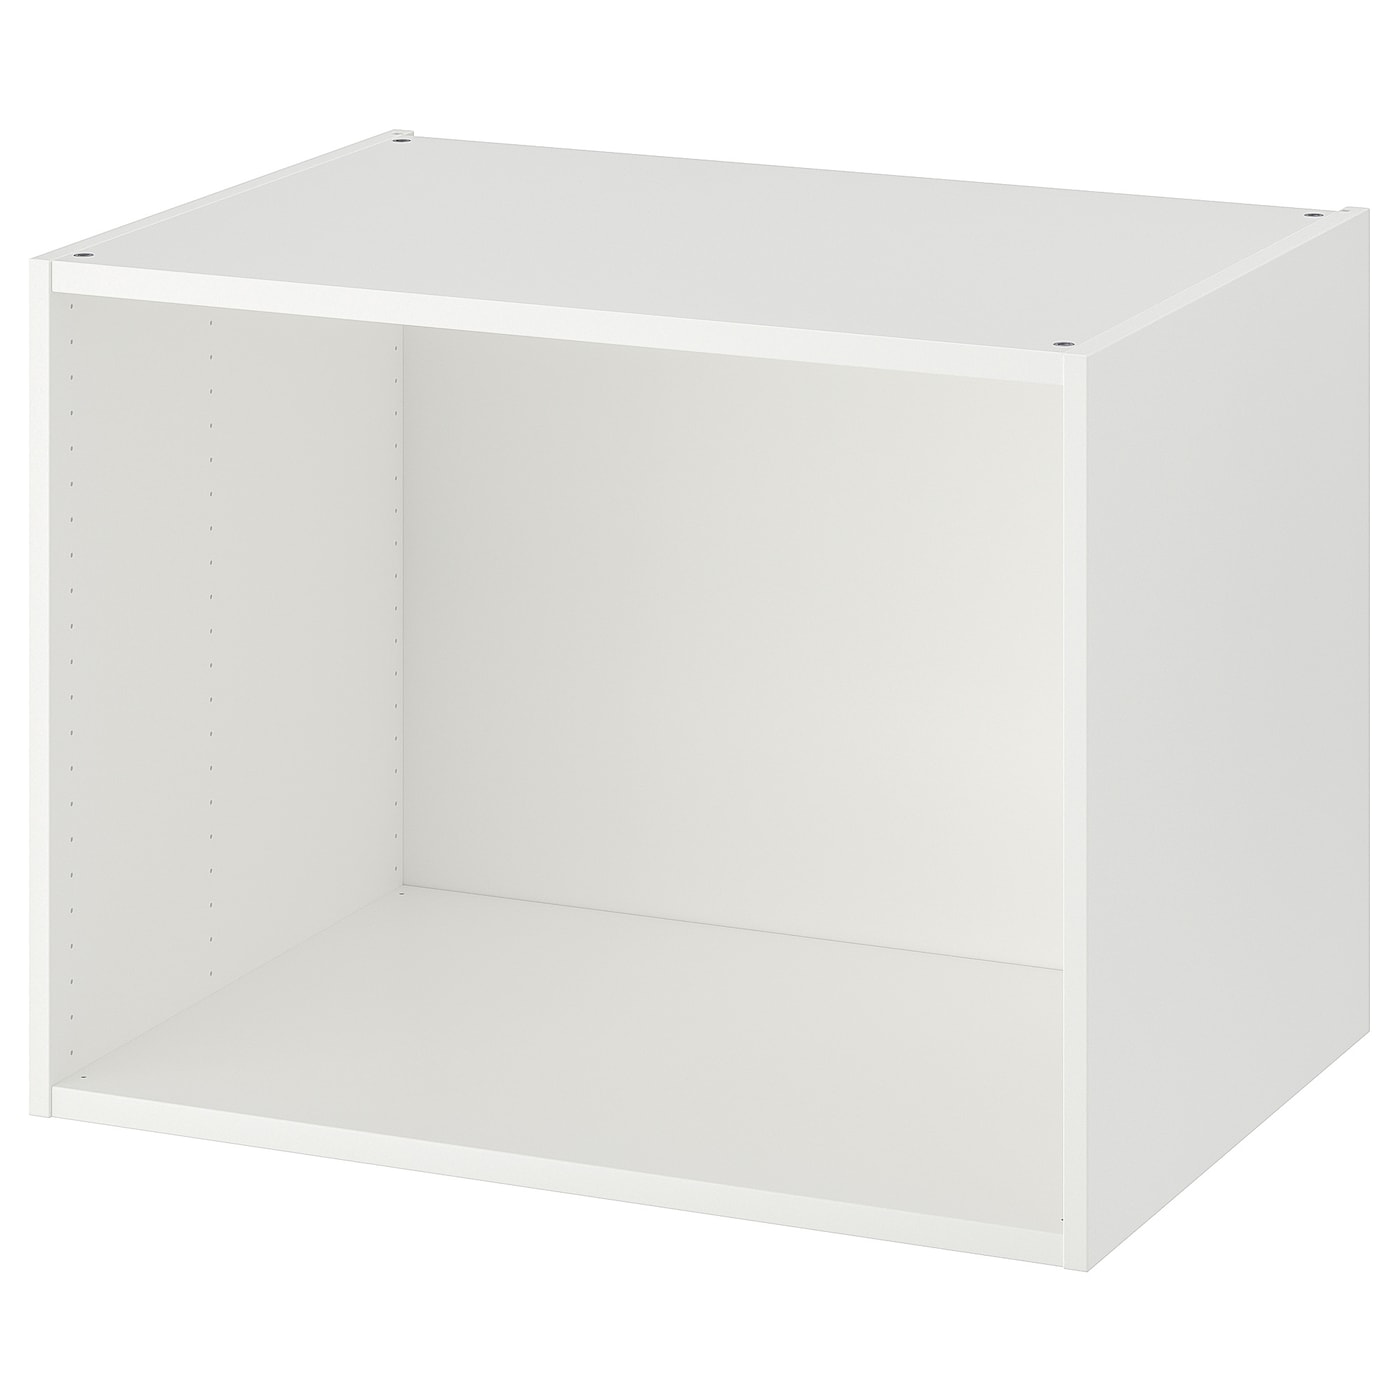 Каркас гардероба - PLATSA IKEA/ПЛАТСА ИКЕА, 60х55х80 см, белый